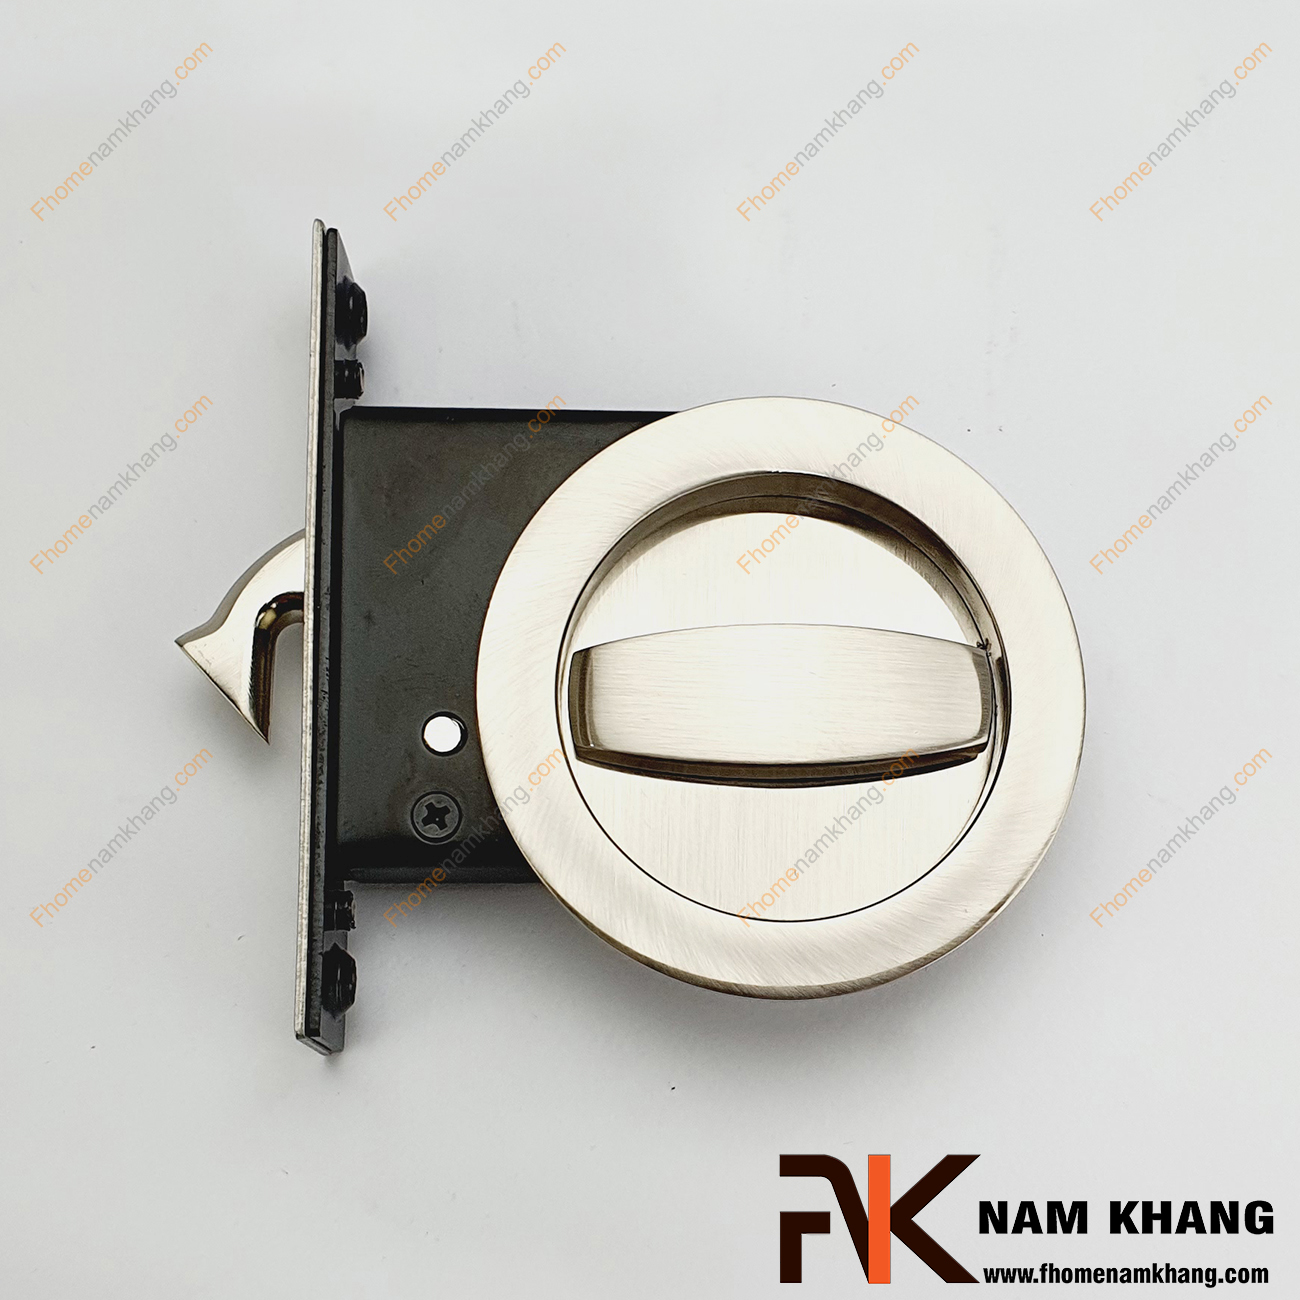 Khóa âm cửa lùa dạng tròn bằng inox NK567-INOX là dòng khóa thông dụng và được ưa chuộng sử dụng tại thị trường Việt Nam.